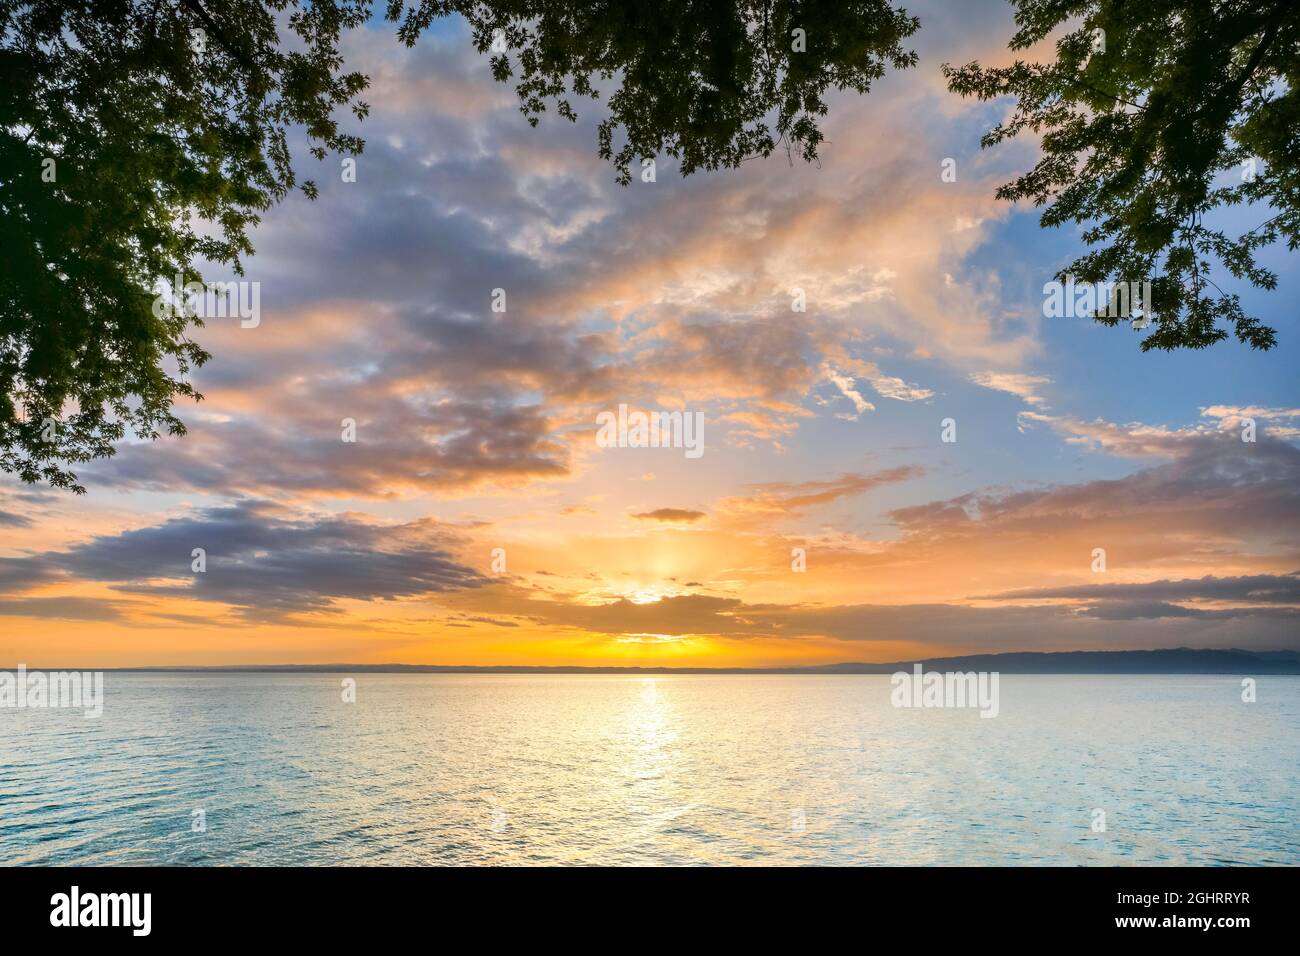 Vue depuis Arbon sur le lac de Constance au lever du soleil coloré, canton de Thrugau, Suisse Banque D'Images